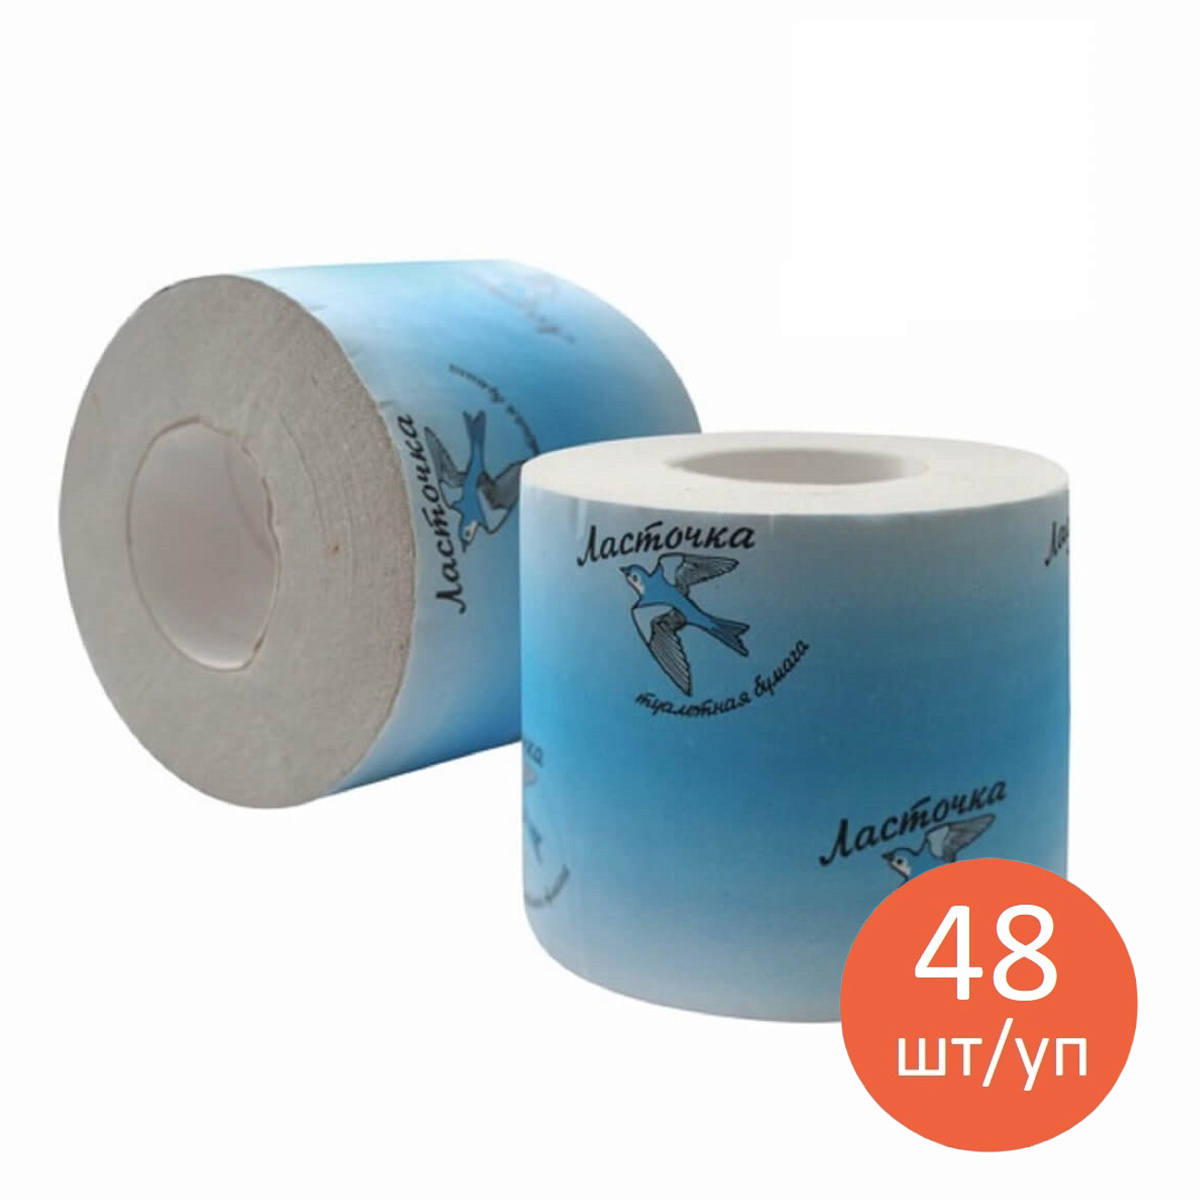 Туалетная бумага «Ласточка», со втулкой 48шт/упаковка